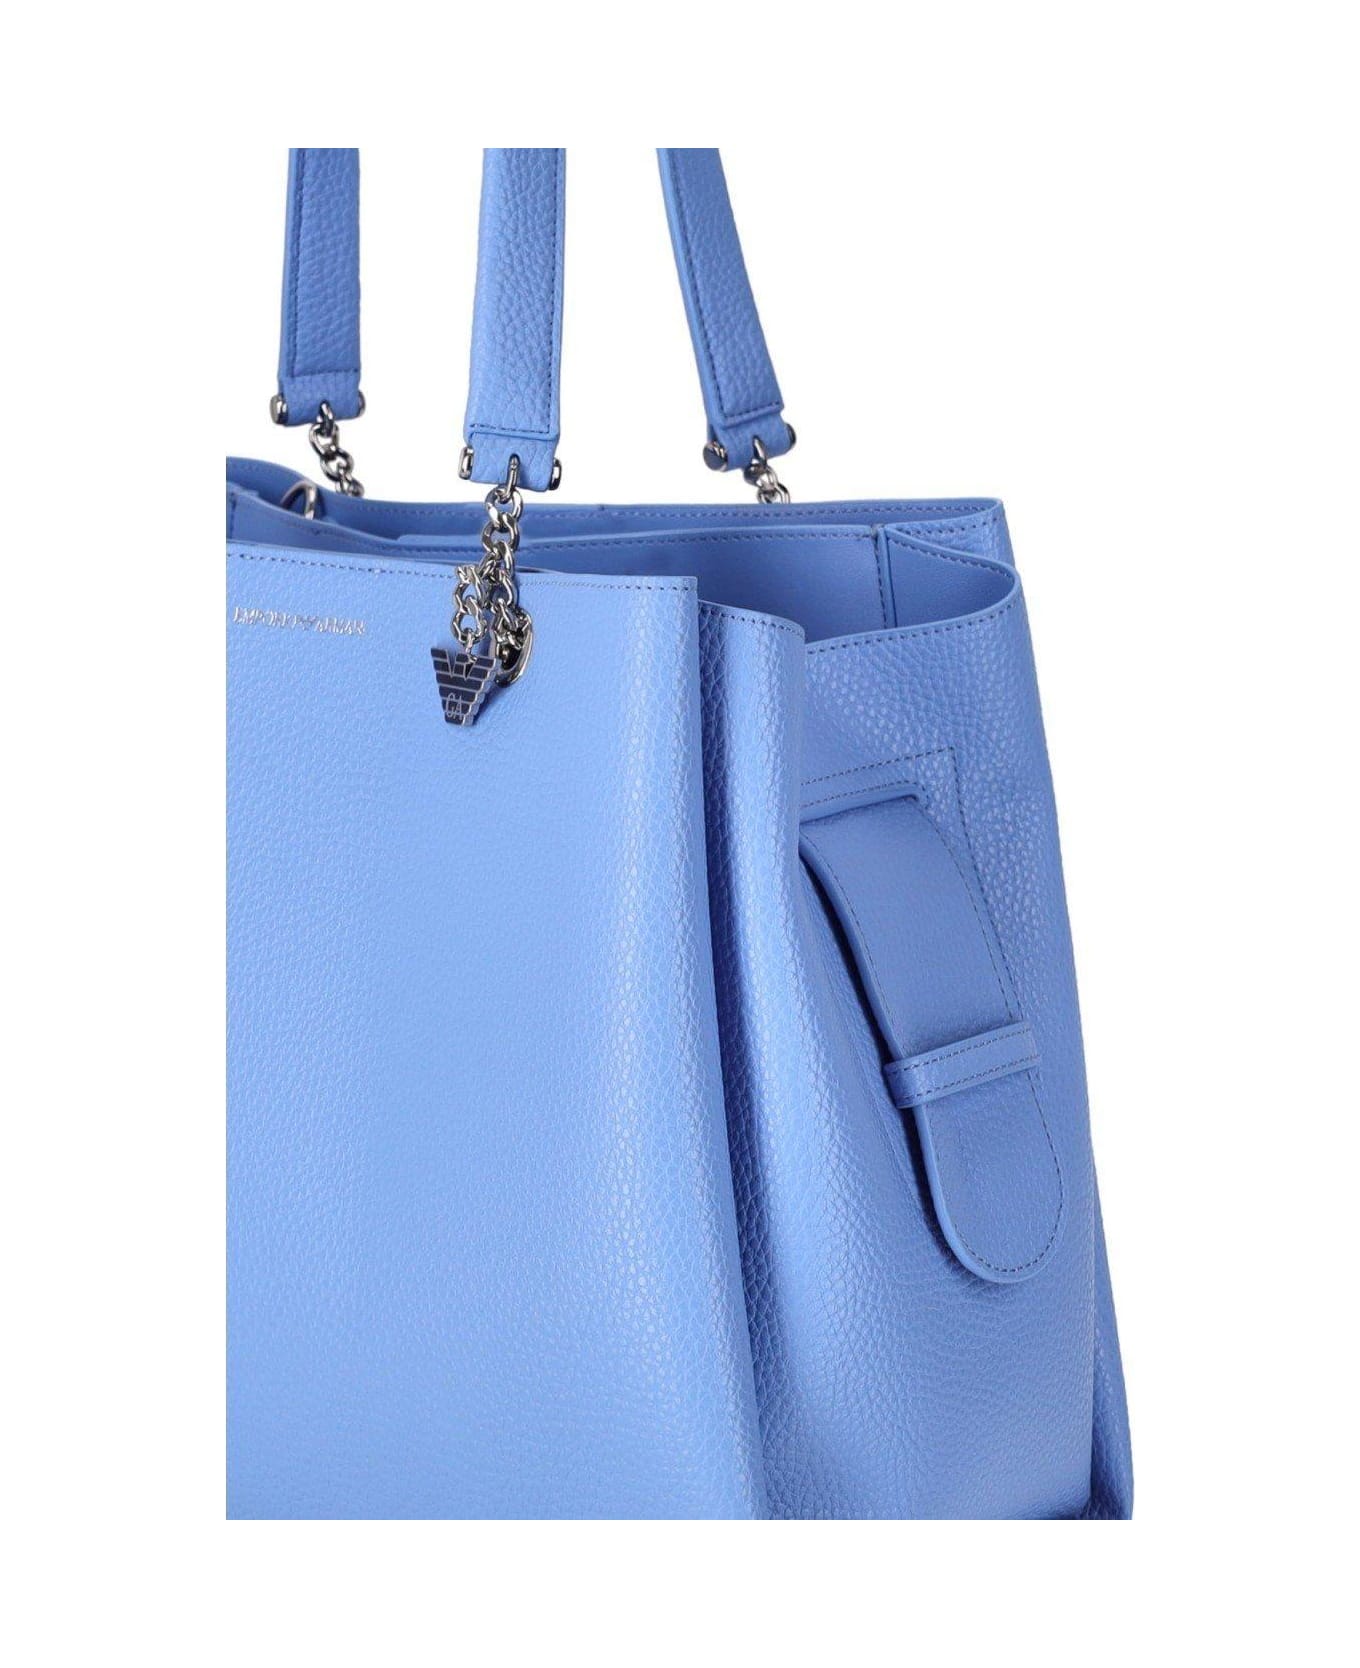 Emporio Armani Logo Printed Tote Bag - Azzurro トートバッグ